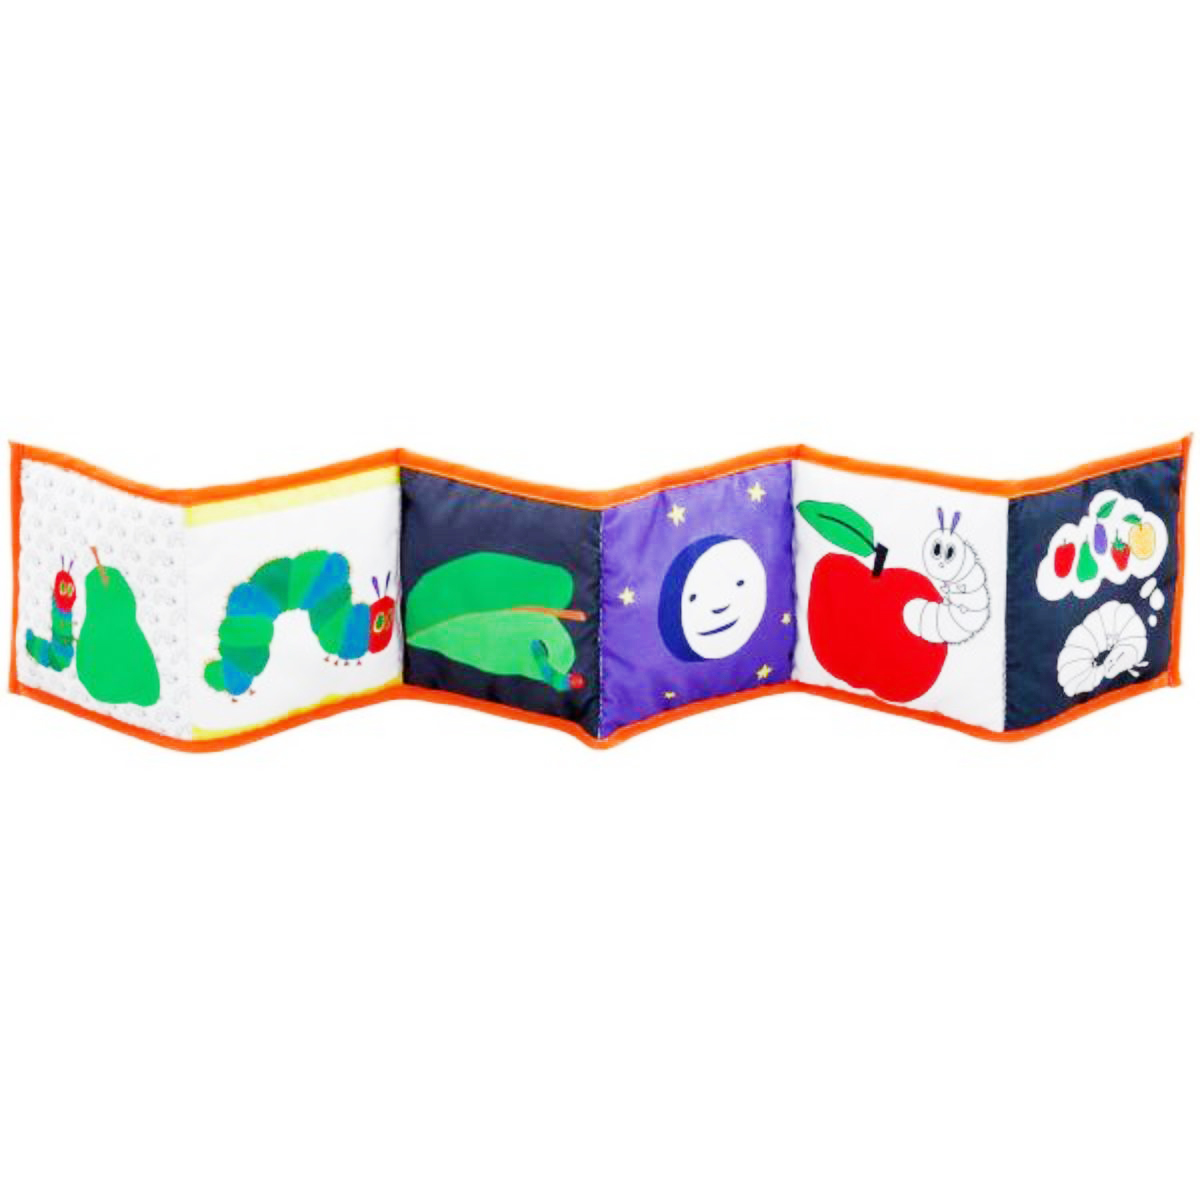 Jucarie textila Tiny Very Hungry Caterpillar, Rainbow Designs, cu doua fete Jucarii Bebelusi 2023-09-21